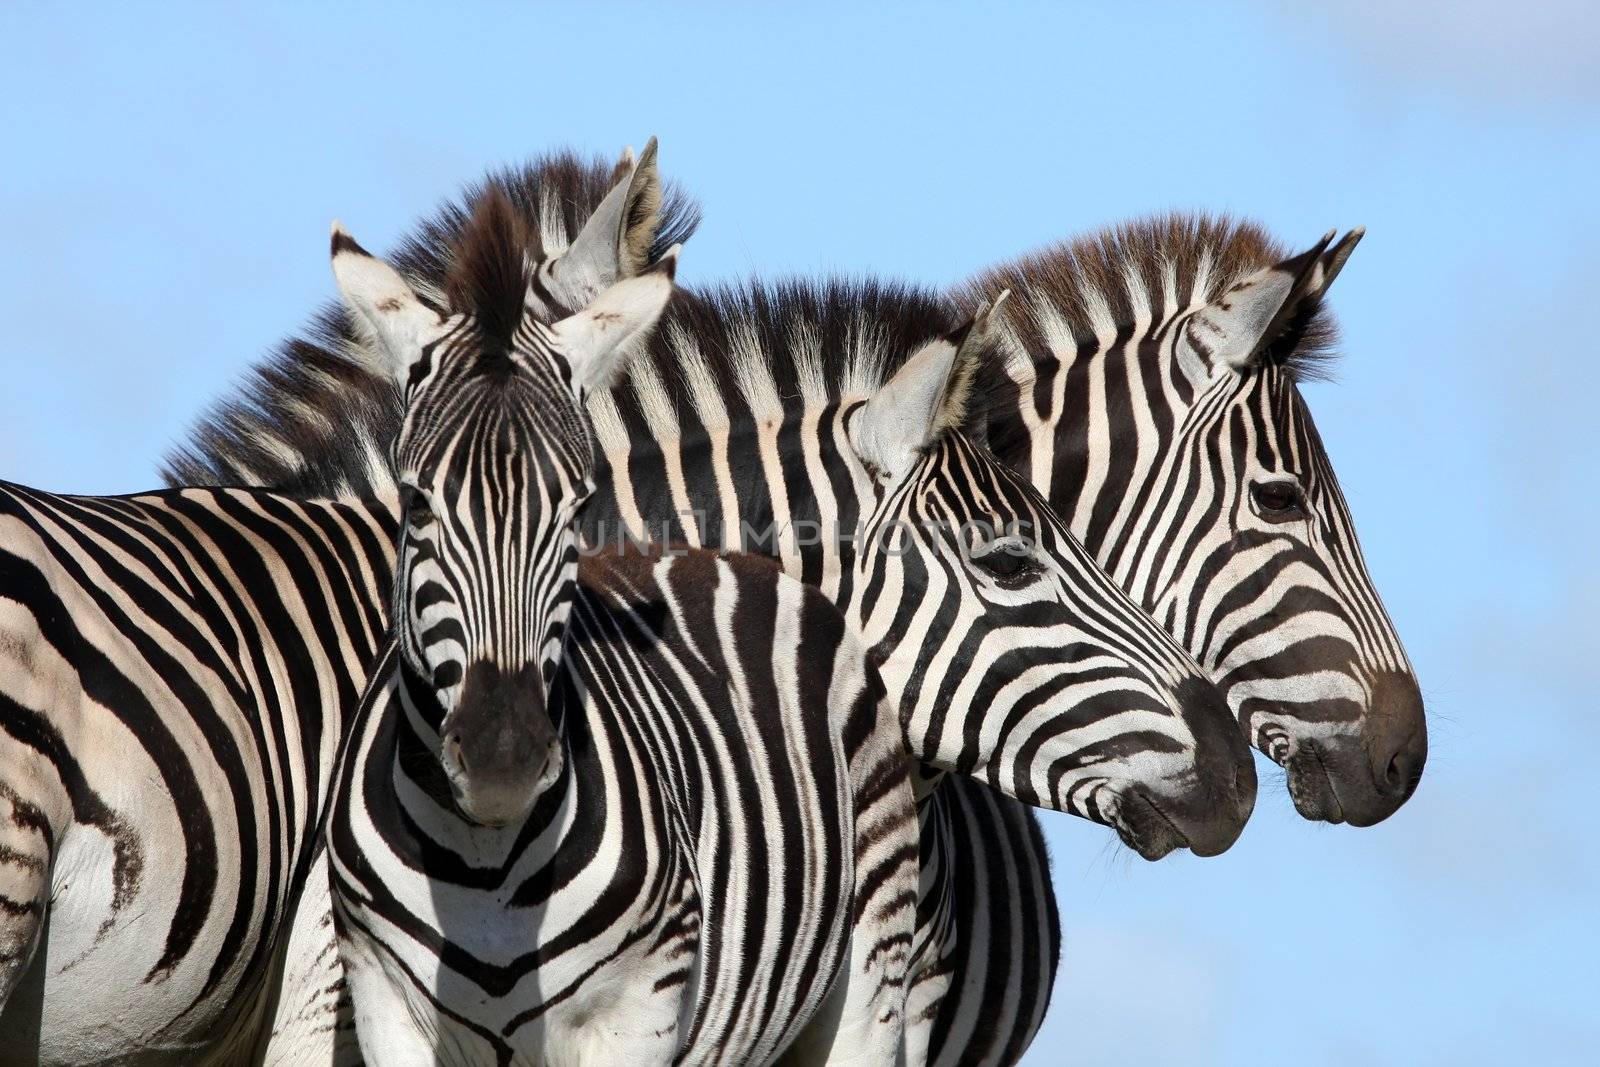 Zebra Group by fouroaks